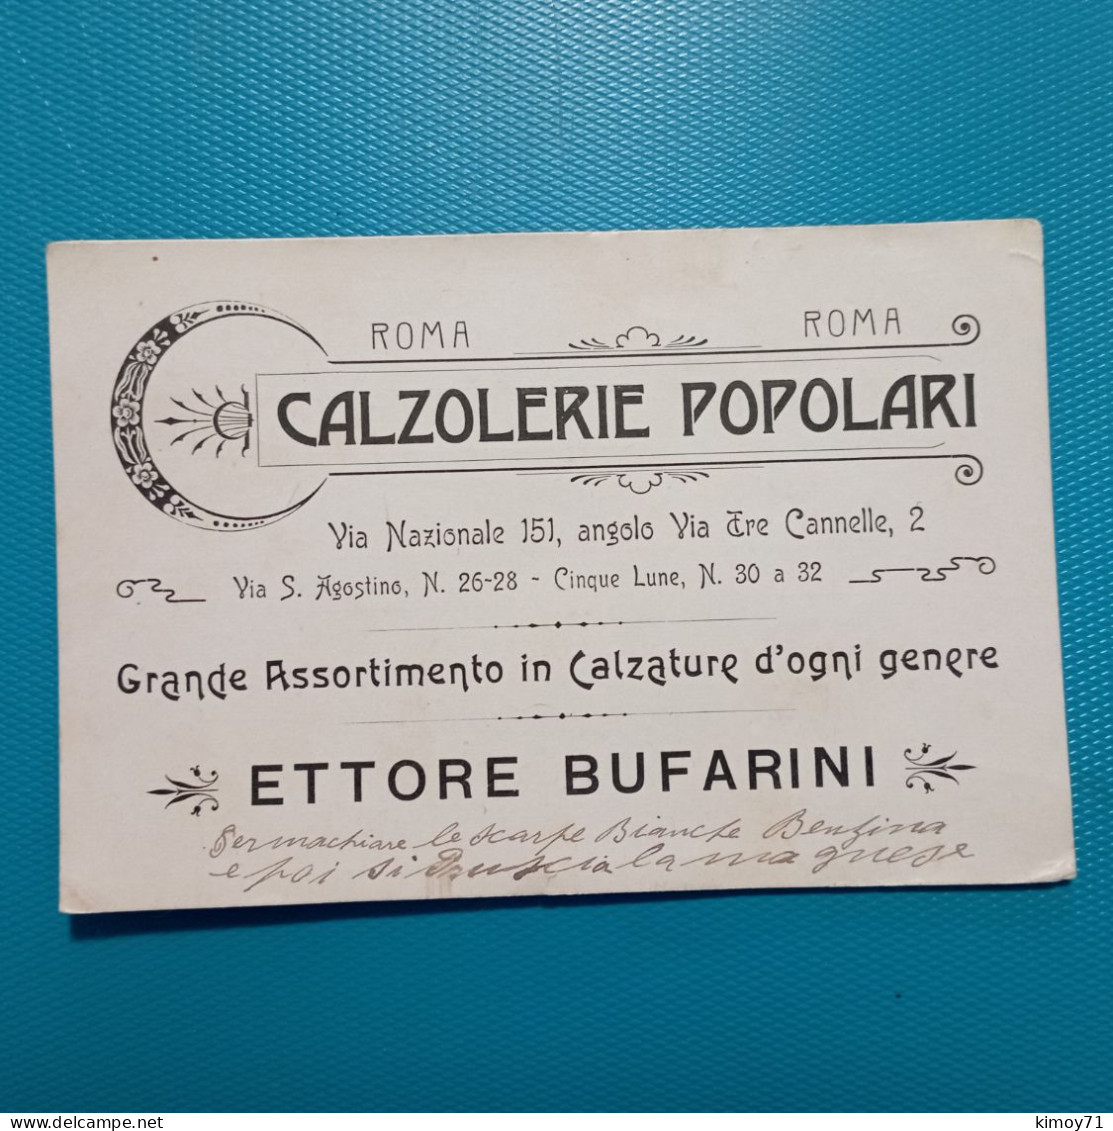 Cartolina Calzolerie Popolari Roma. - Publicidad